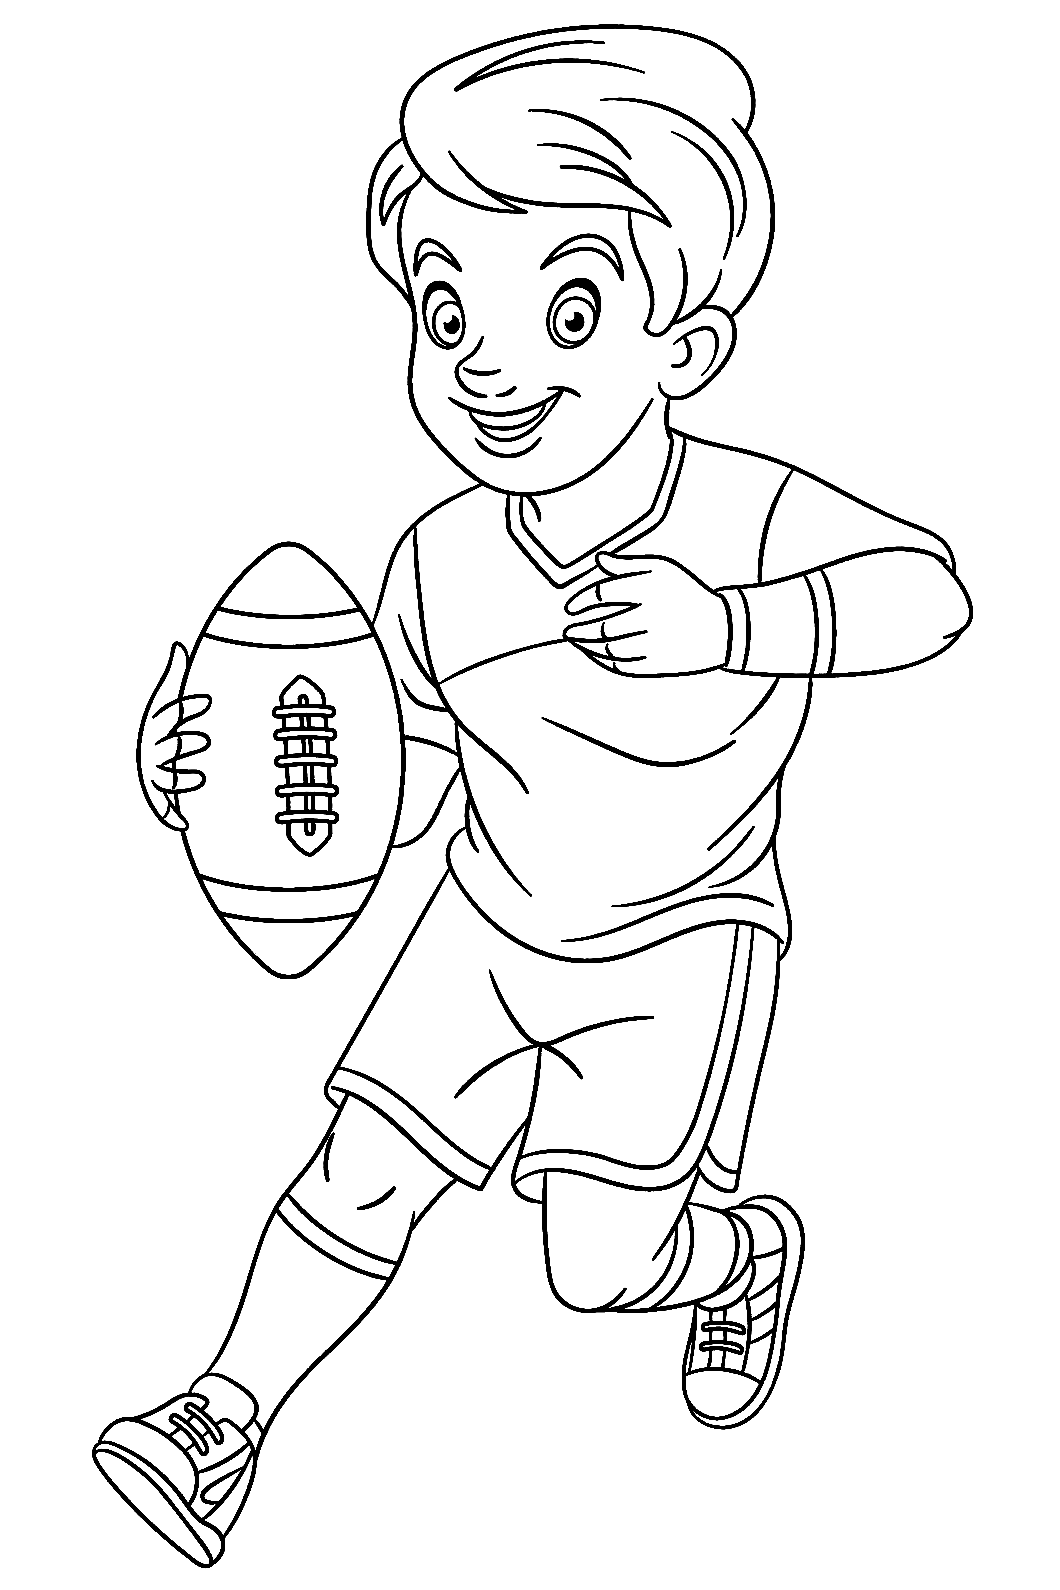 Junge spielt Rugby aus Rugby